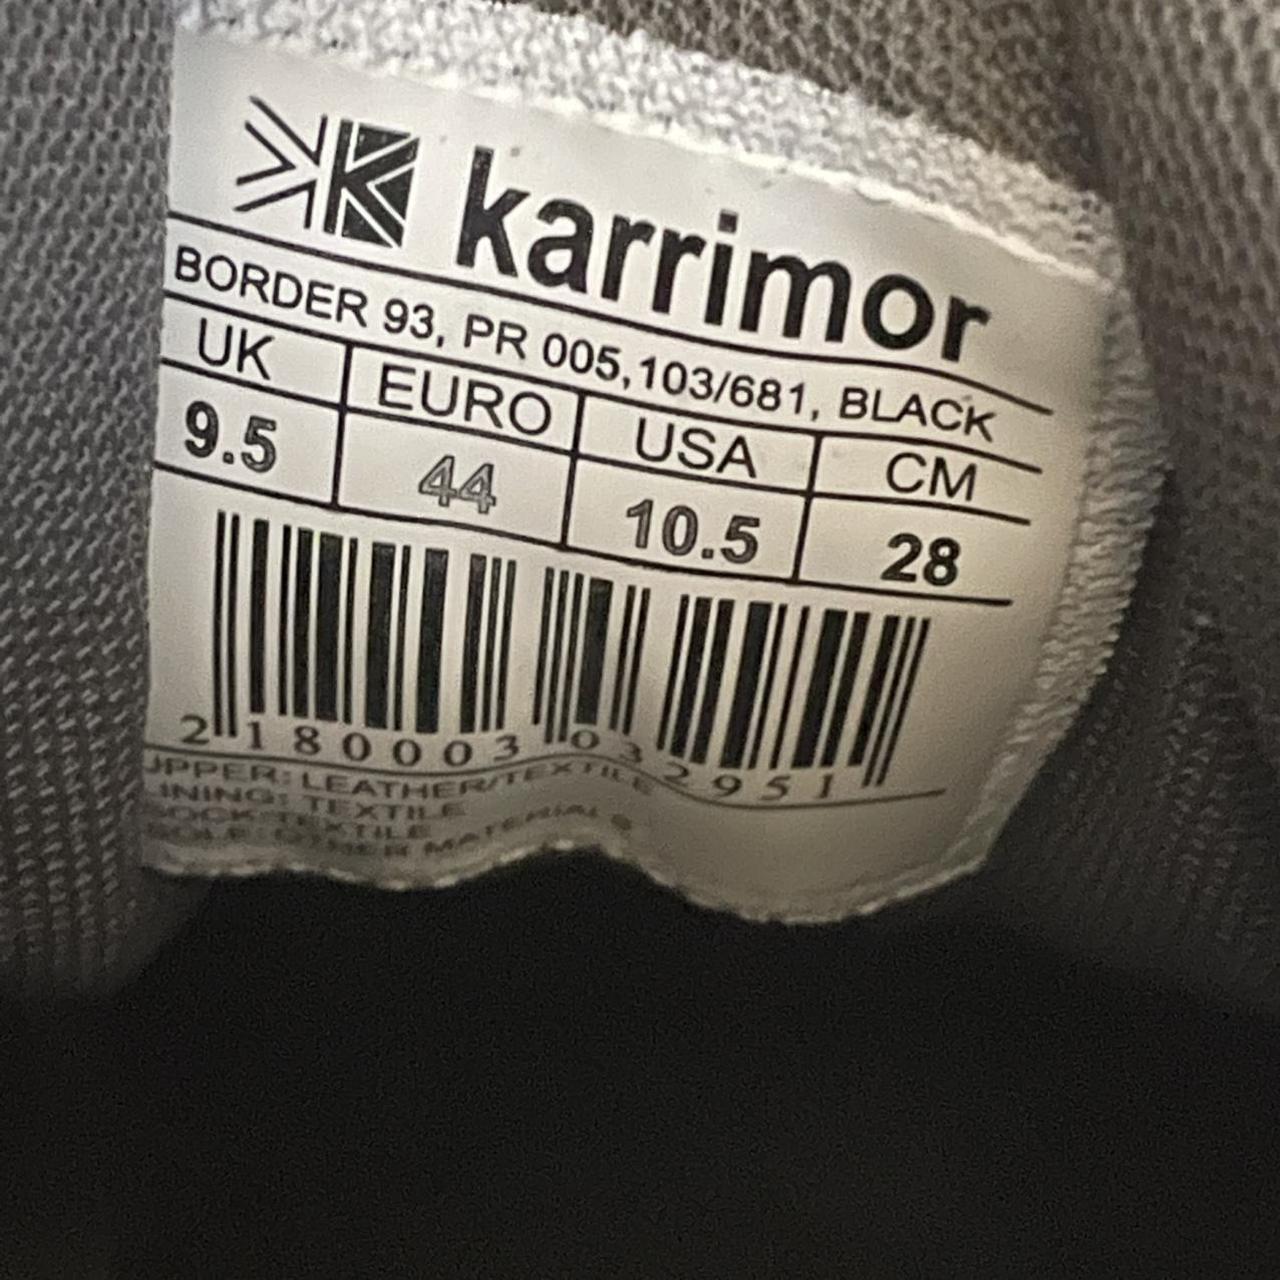 Product Image 2 - Karrimor Mens UK Size 9.5